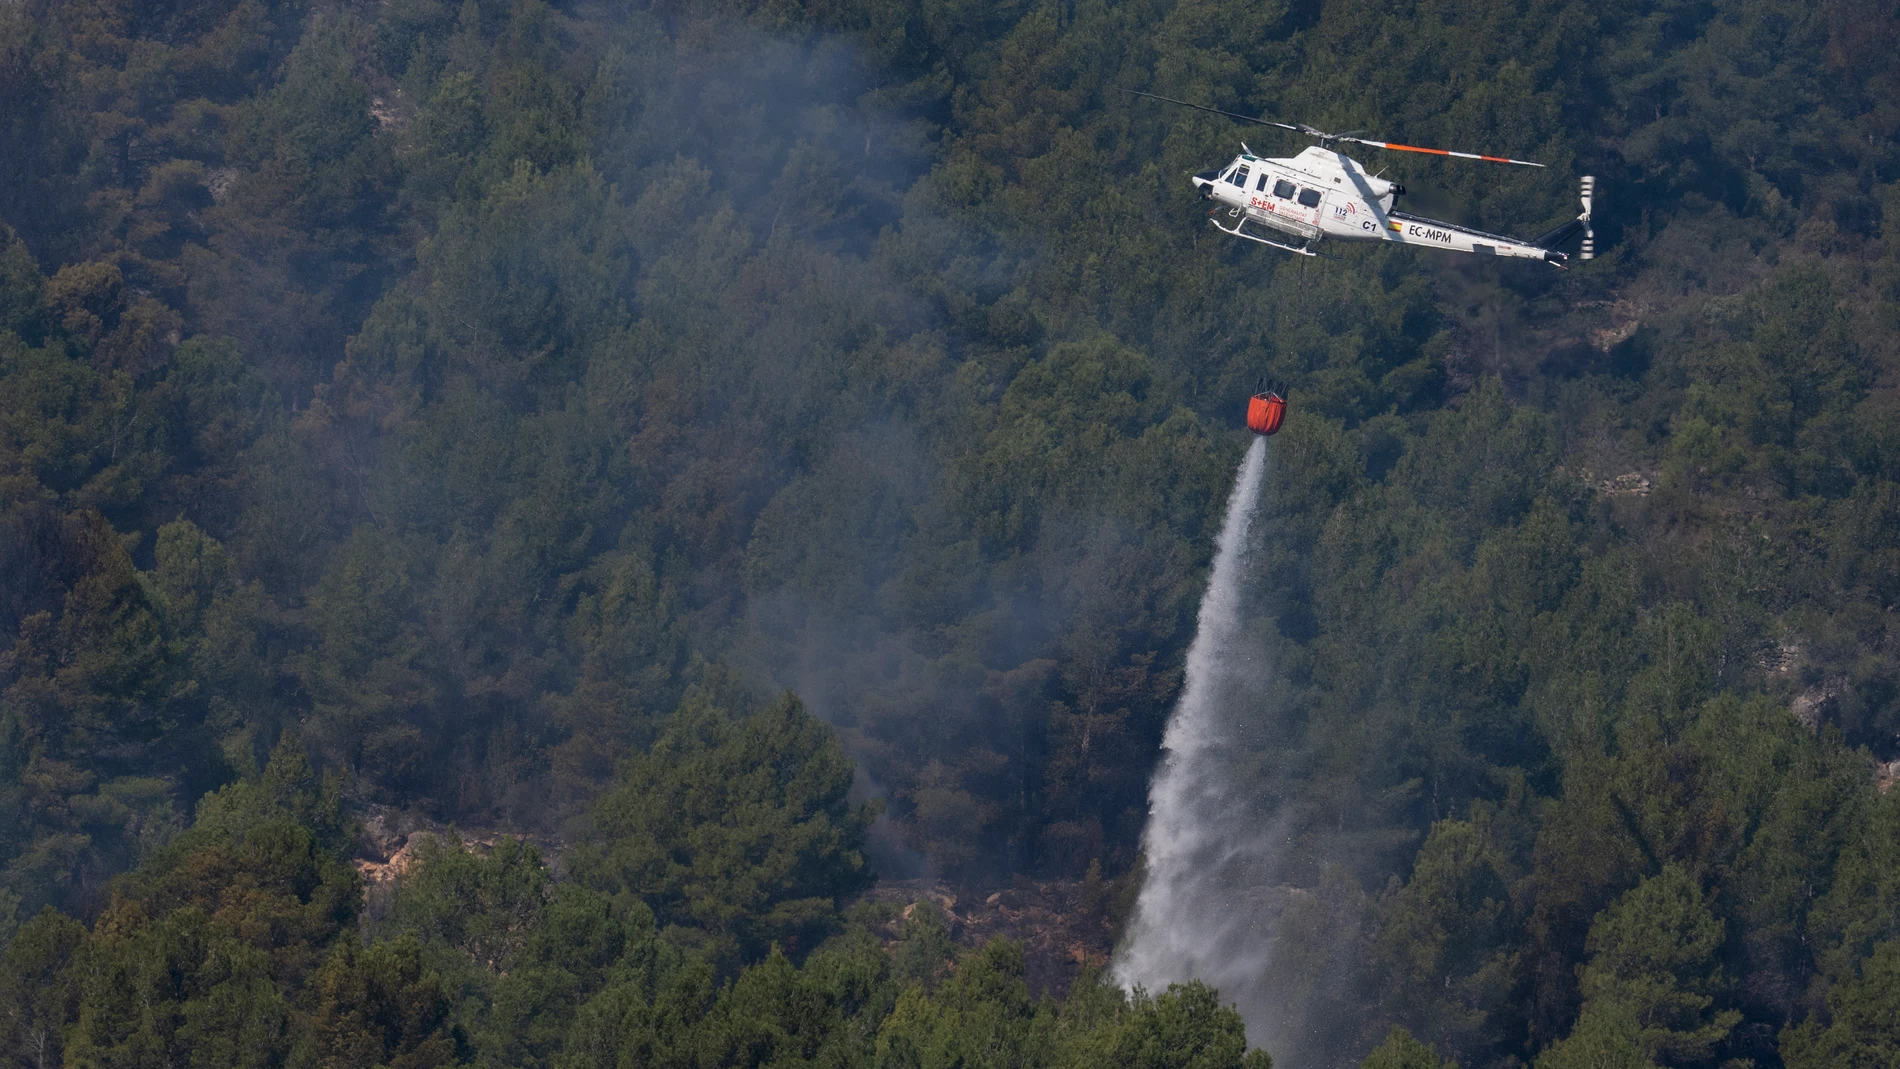 Los medios aéreos desplazados hasta el incendio forestal iniciado de madrugada en el pueblo castellonense de Toga trabajan ahora en una zona escarpada de difícil acceso por tratarse de barrancos